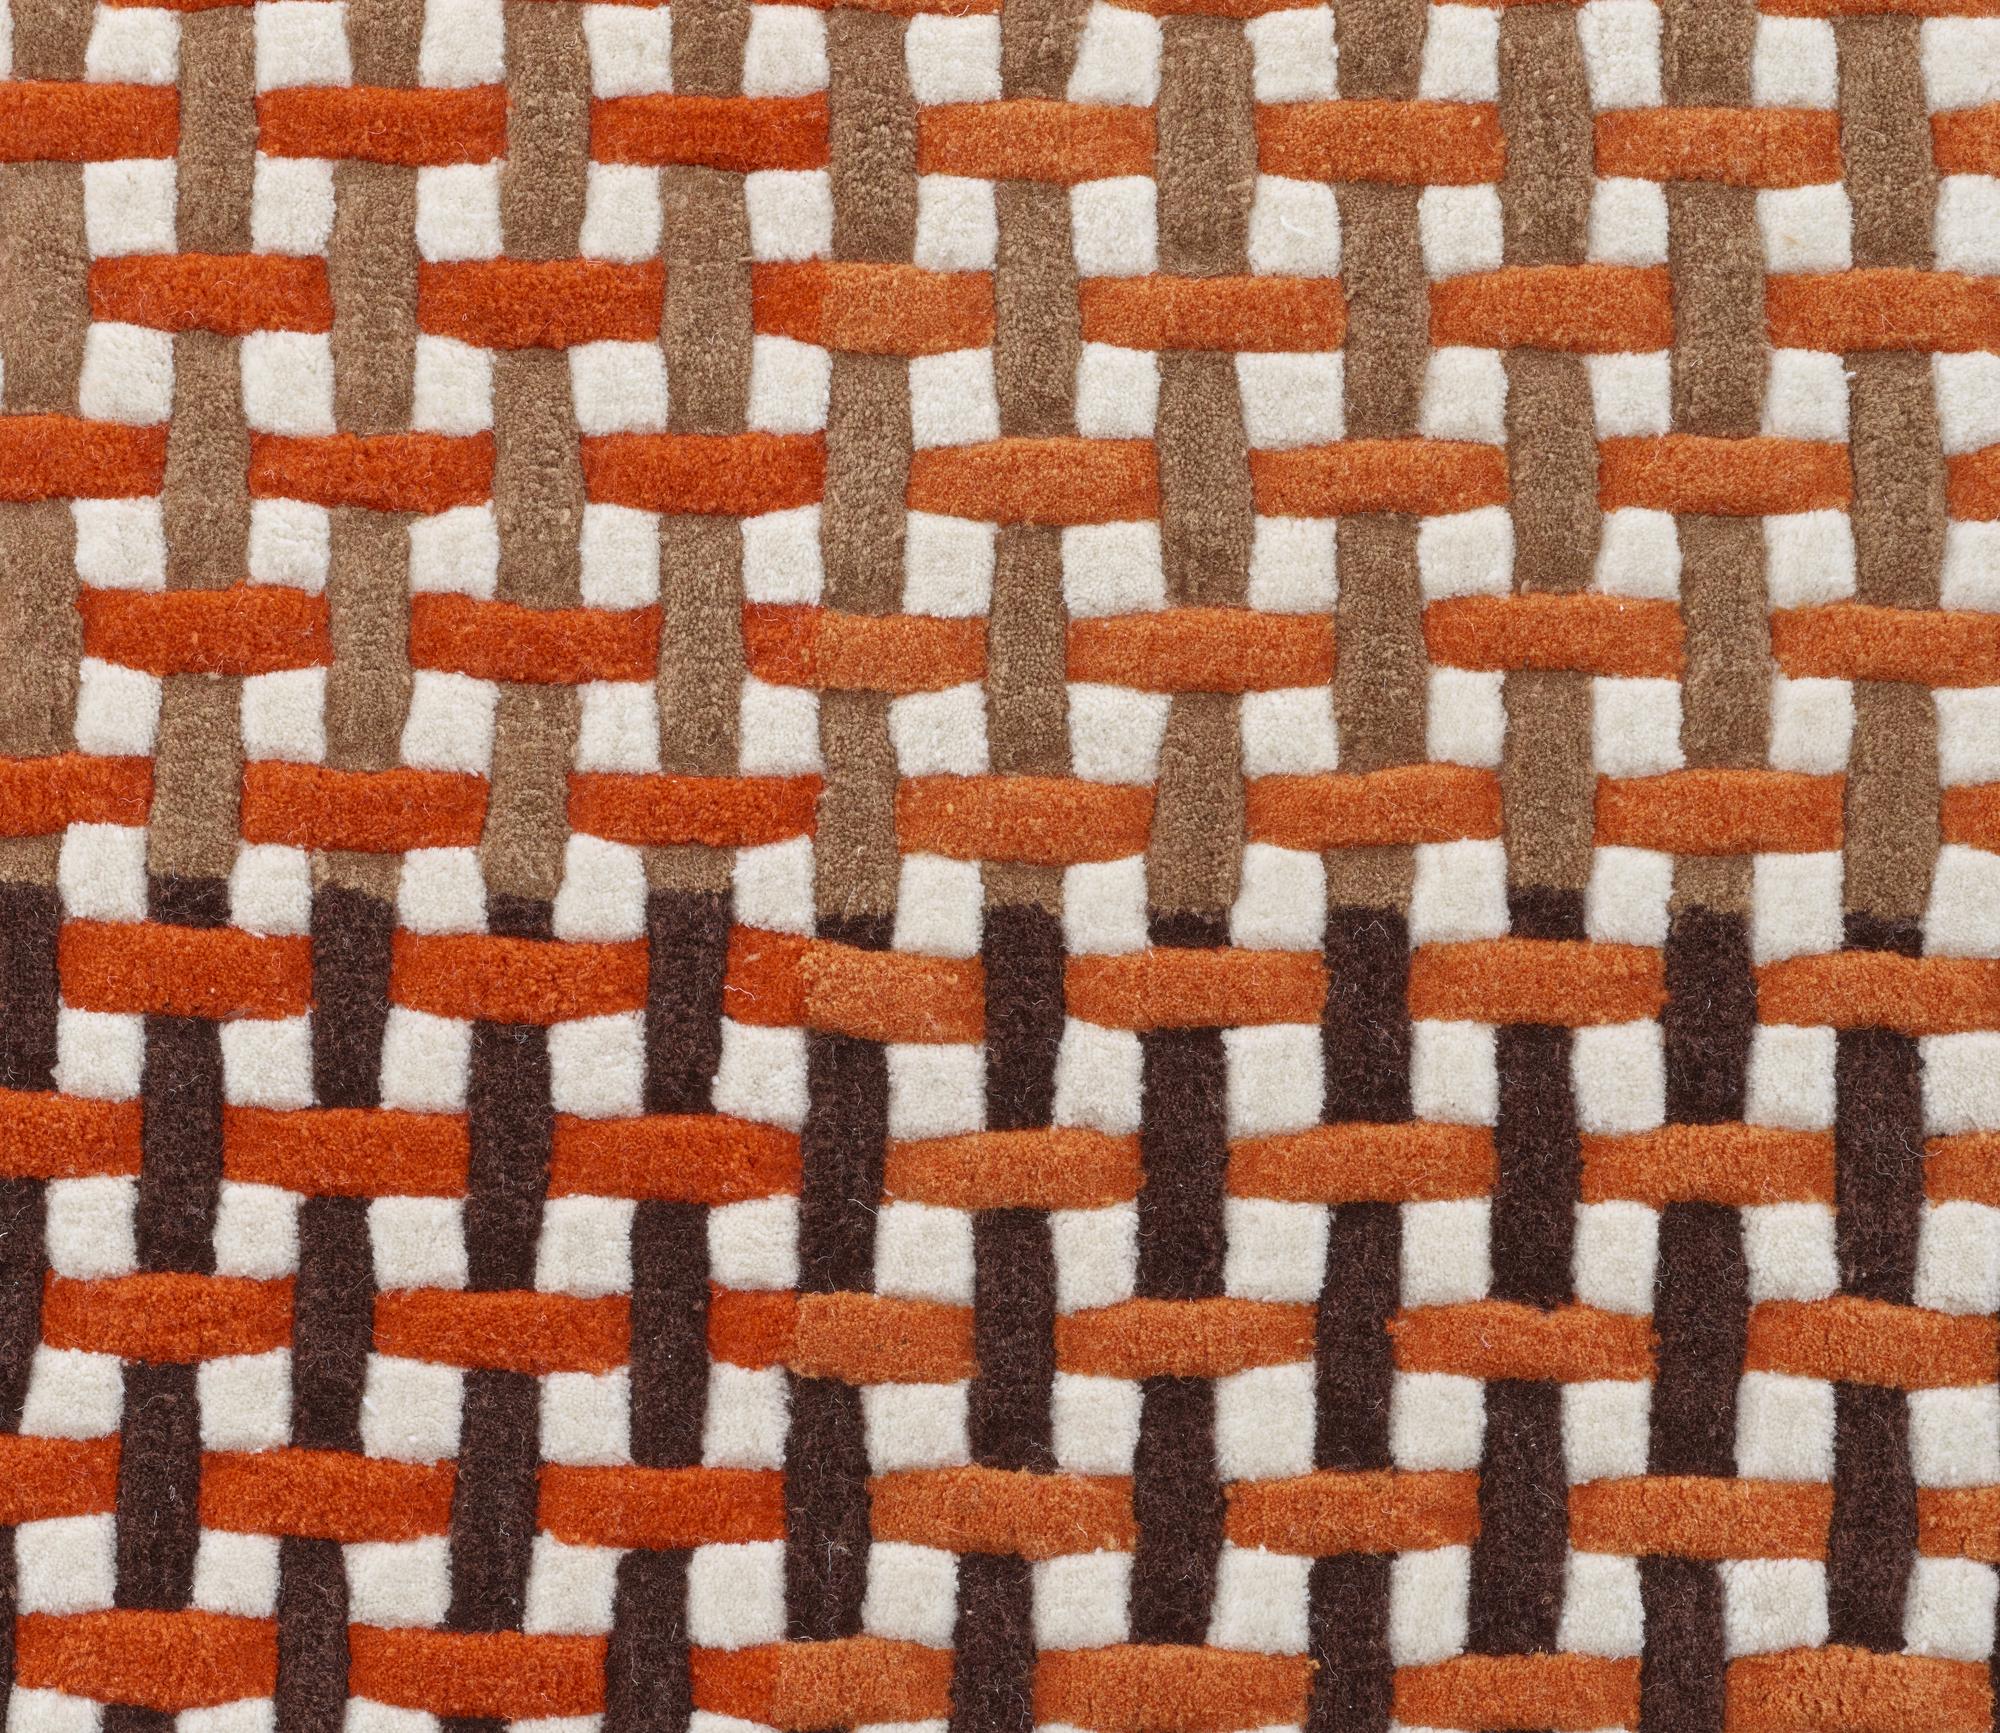 37 x 53 Tapis de salon Helsinki moderne duveteux épais orange motif lignes géométriques Zig Zag 110cm x 160cm